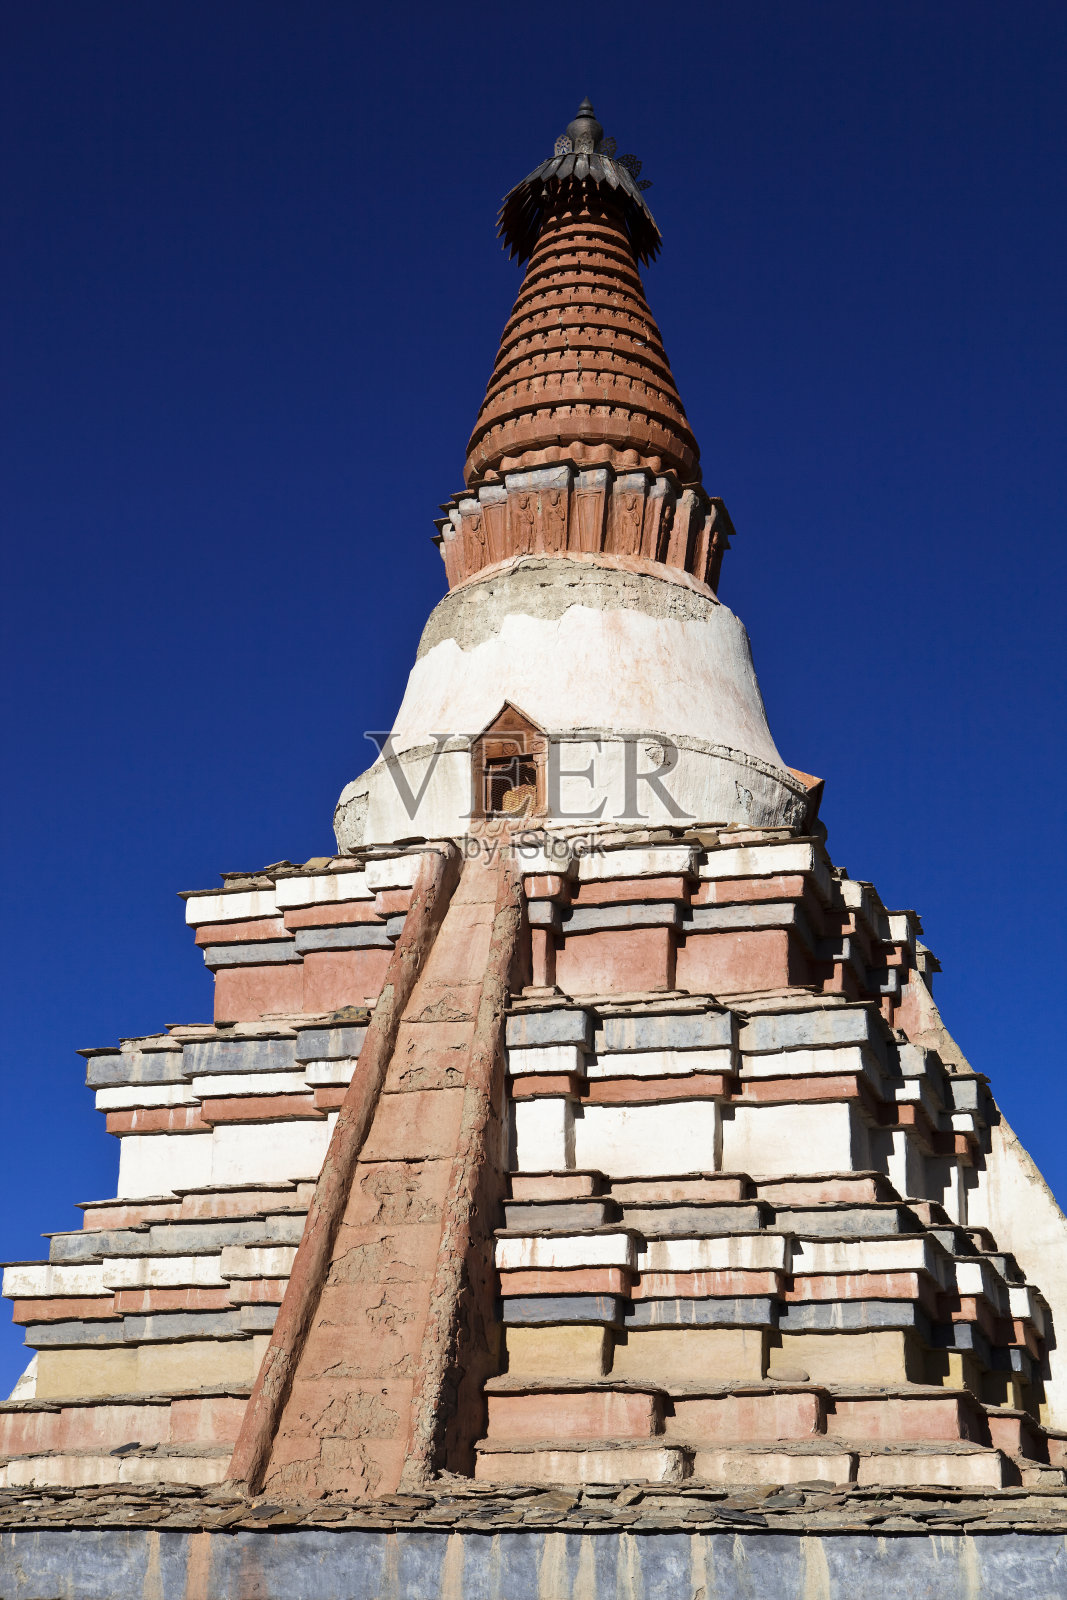 西藏:砖宝塔照片摄影图片